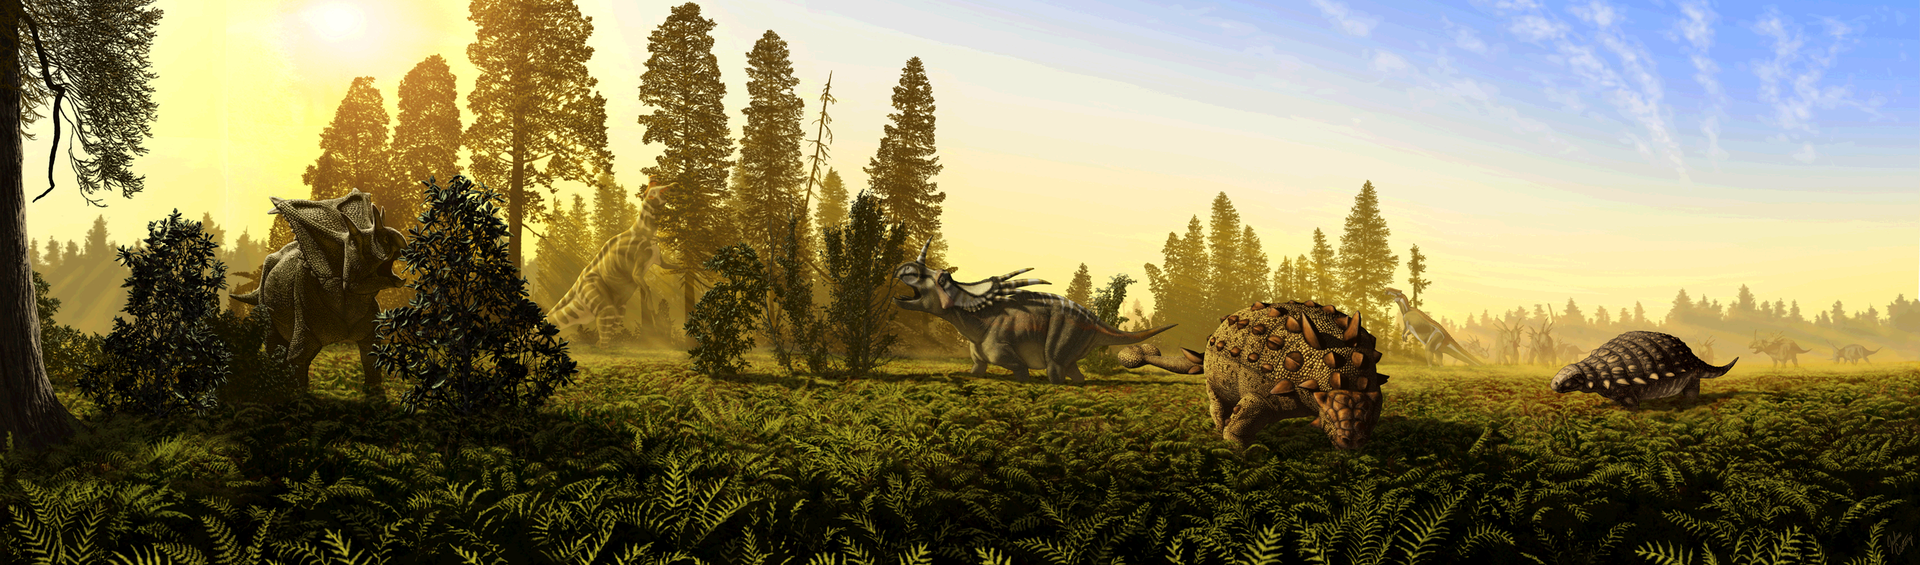 Rekonstrukce dávného ekosystému a jeho dinosauří megafauny v rámci geologického souvrství Dinosaur Park. Množství ankylosaurů, hadrosauridů, ceratopsidů i teropodů obývalo v době před 76 miliony let západ severoamerického kontinentu. Právě v této dob